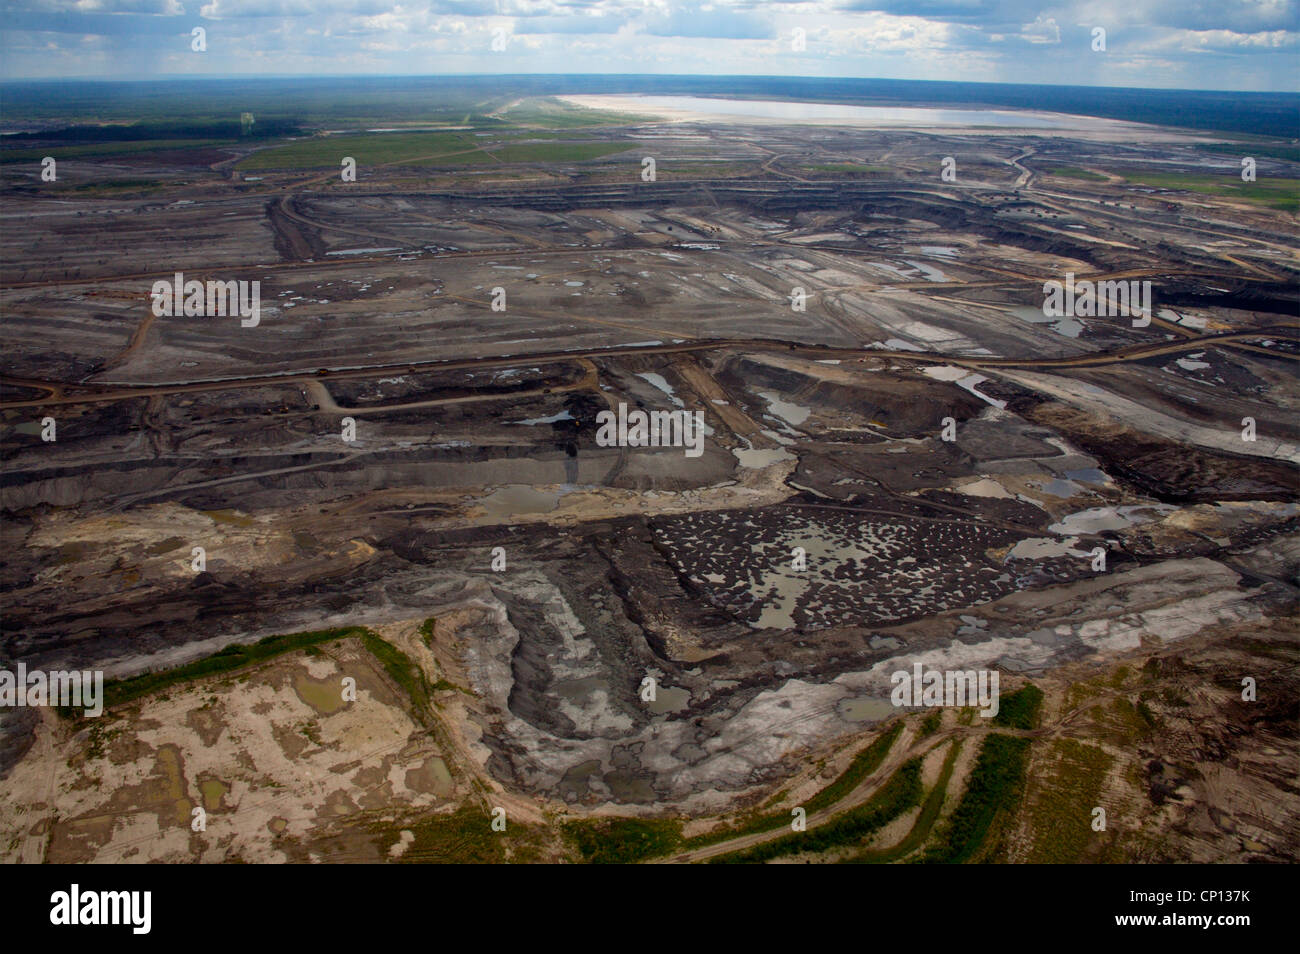 Suncor tar sands mine, Athabasca tar sands, Fort McMurray, Alberta, Canada. Stock Photo